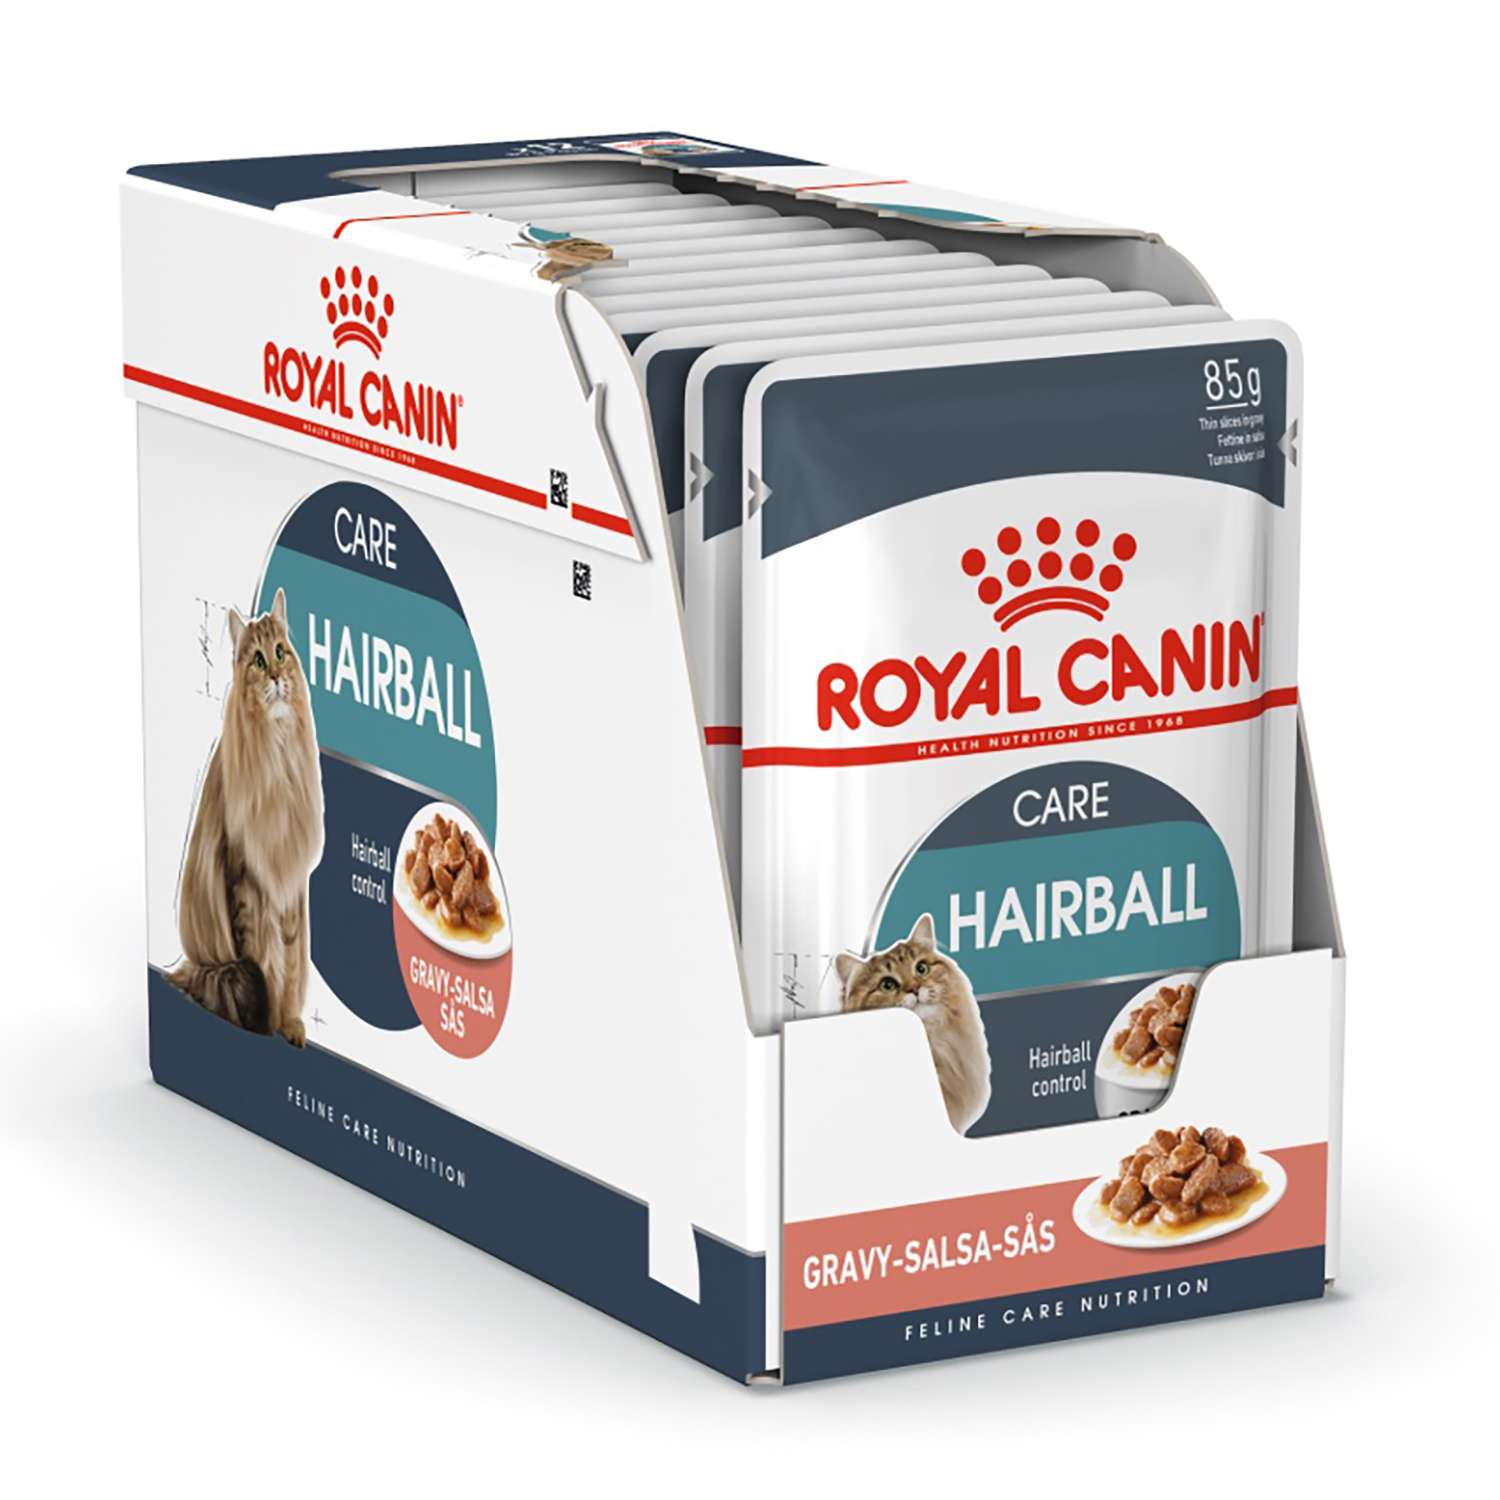 Корм влажный для кошек ROYAL CANIN Hairball Care 85г соус в целях профилактики образования волосяных комочков в желудочно-кишечном тракте пауч - фото 4